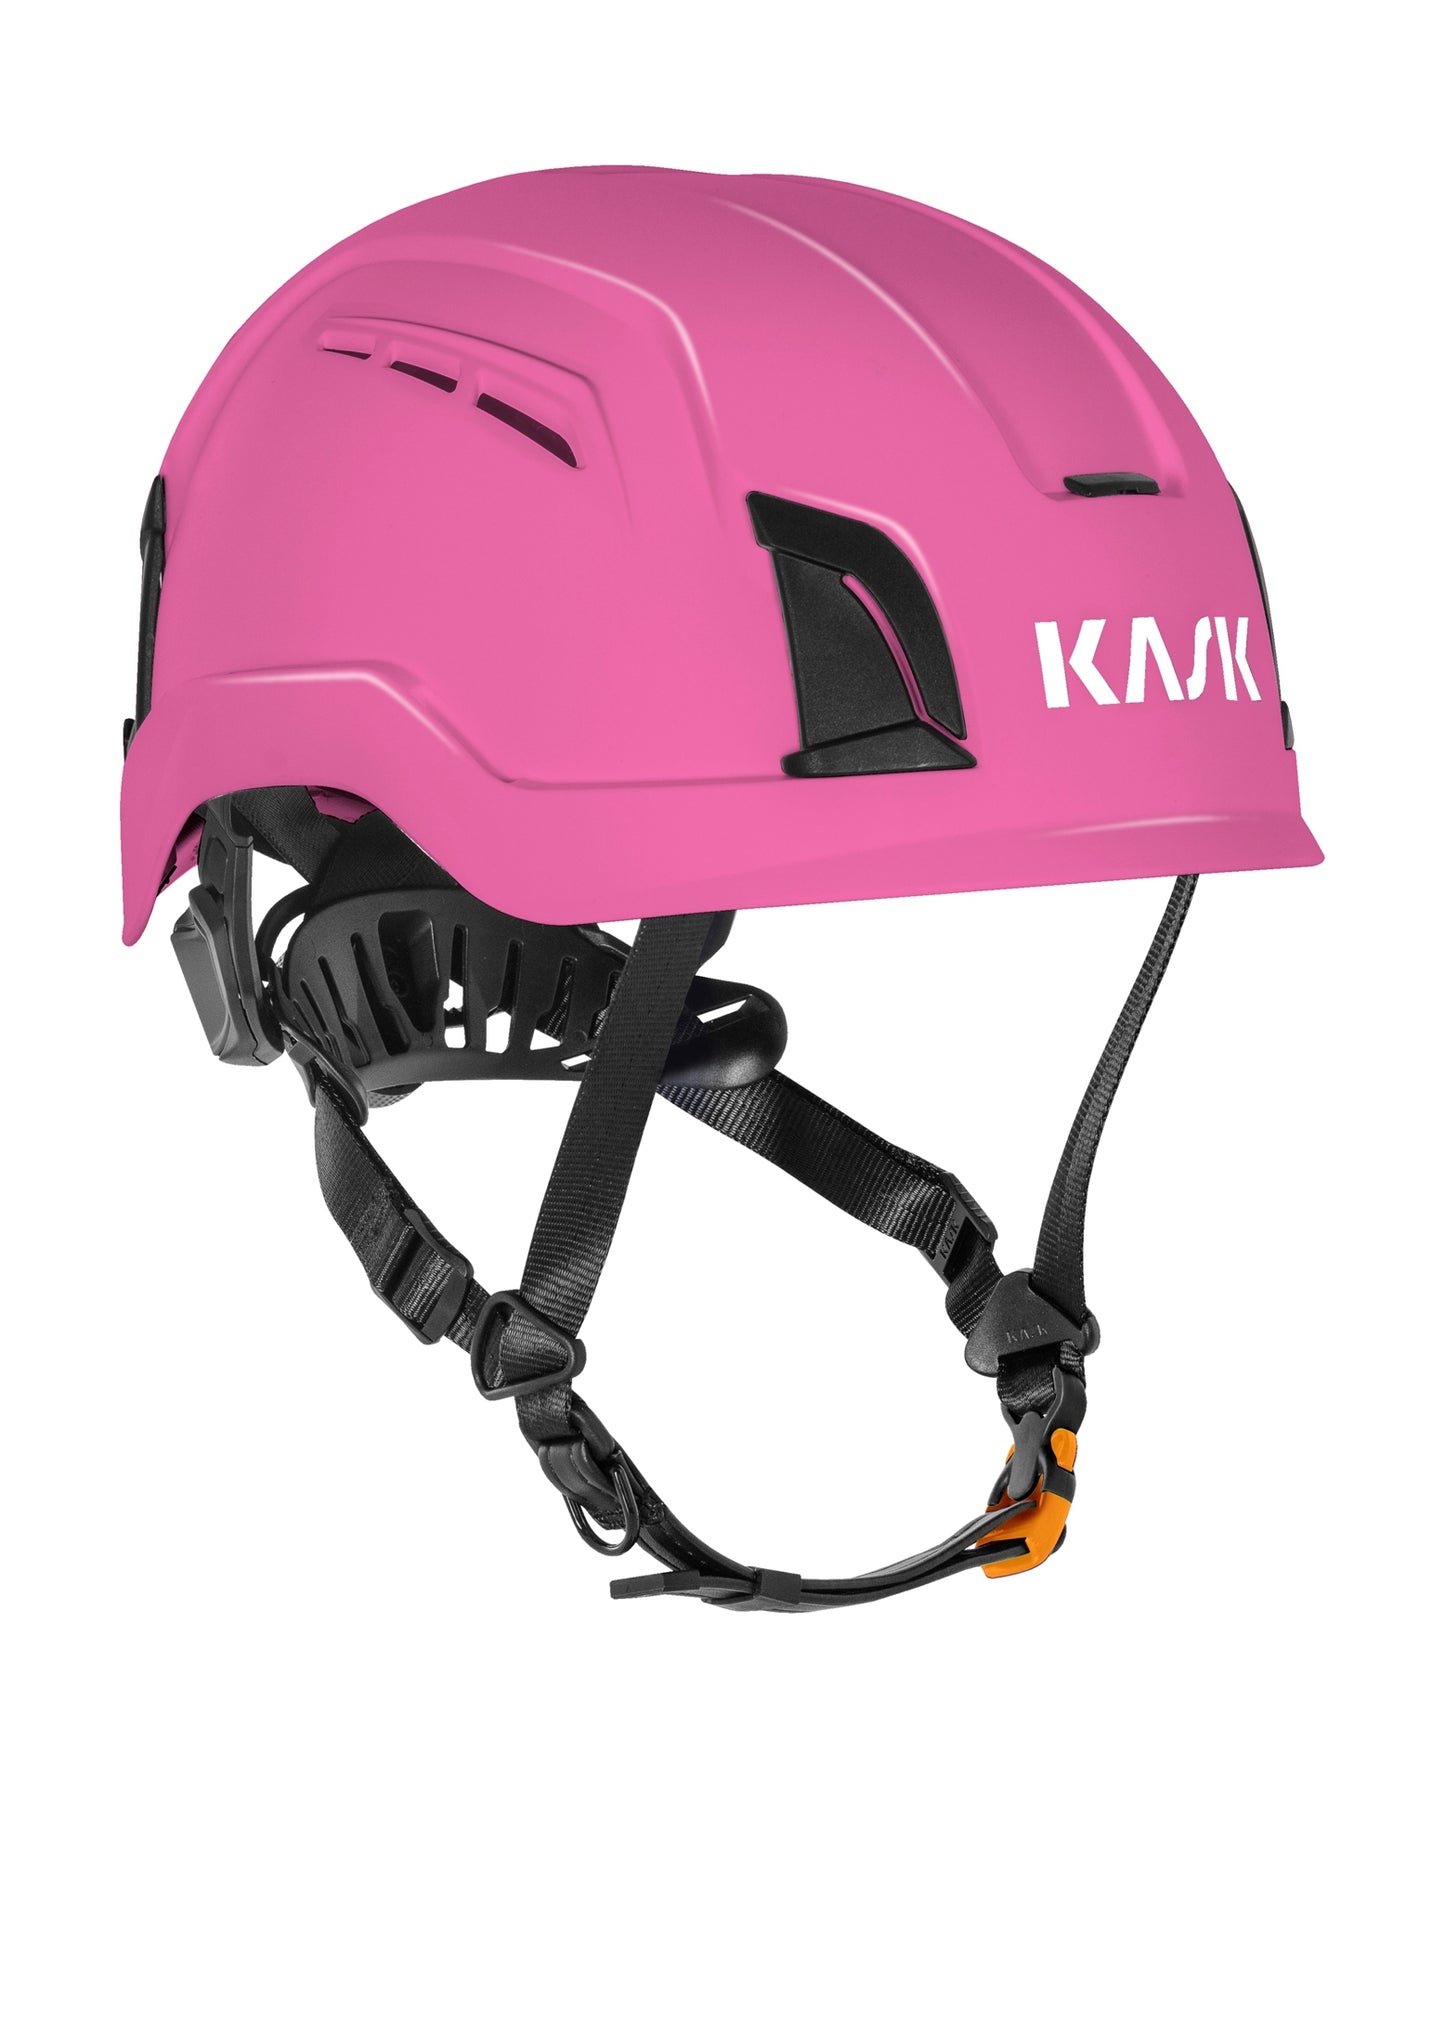 Kask ZENITH X  通風款安全頭盔 [ EN 397 /  EN50365 防電流認證 ] 11色